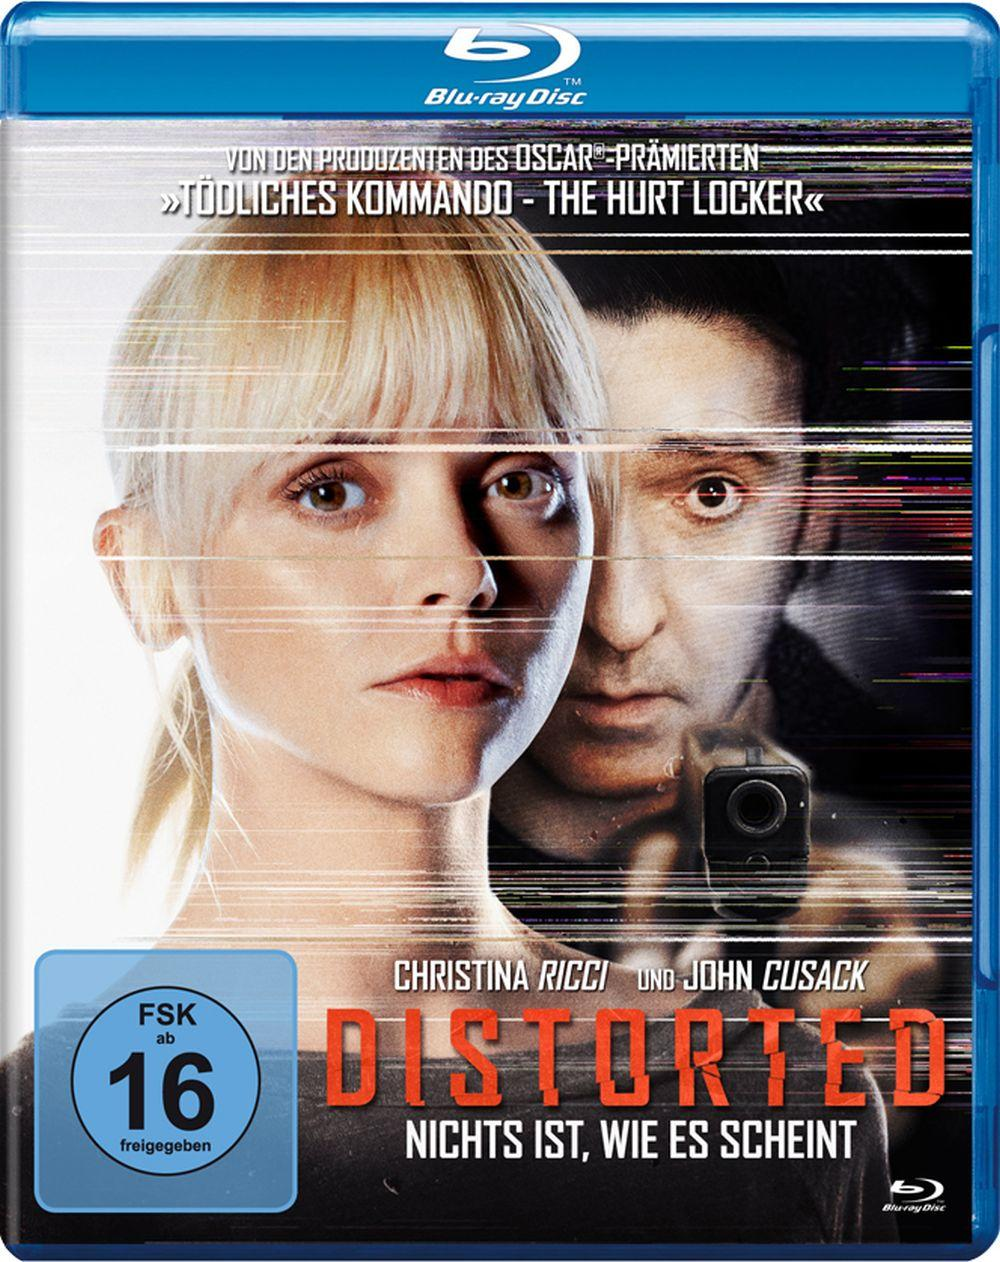 DISTORTED - NICHTS IST Blu-ray ES SCHEINT WIE